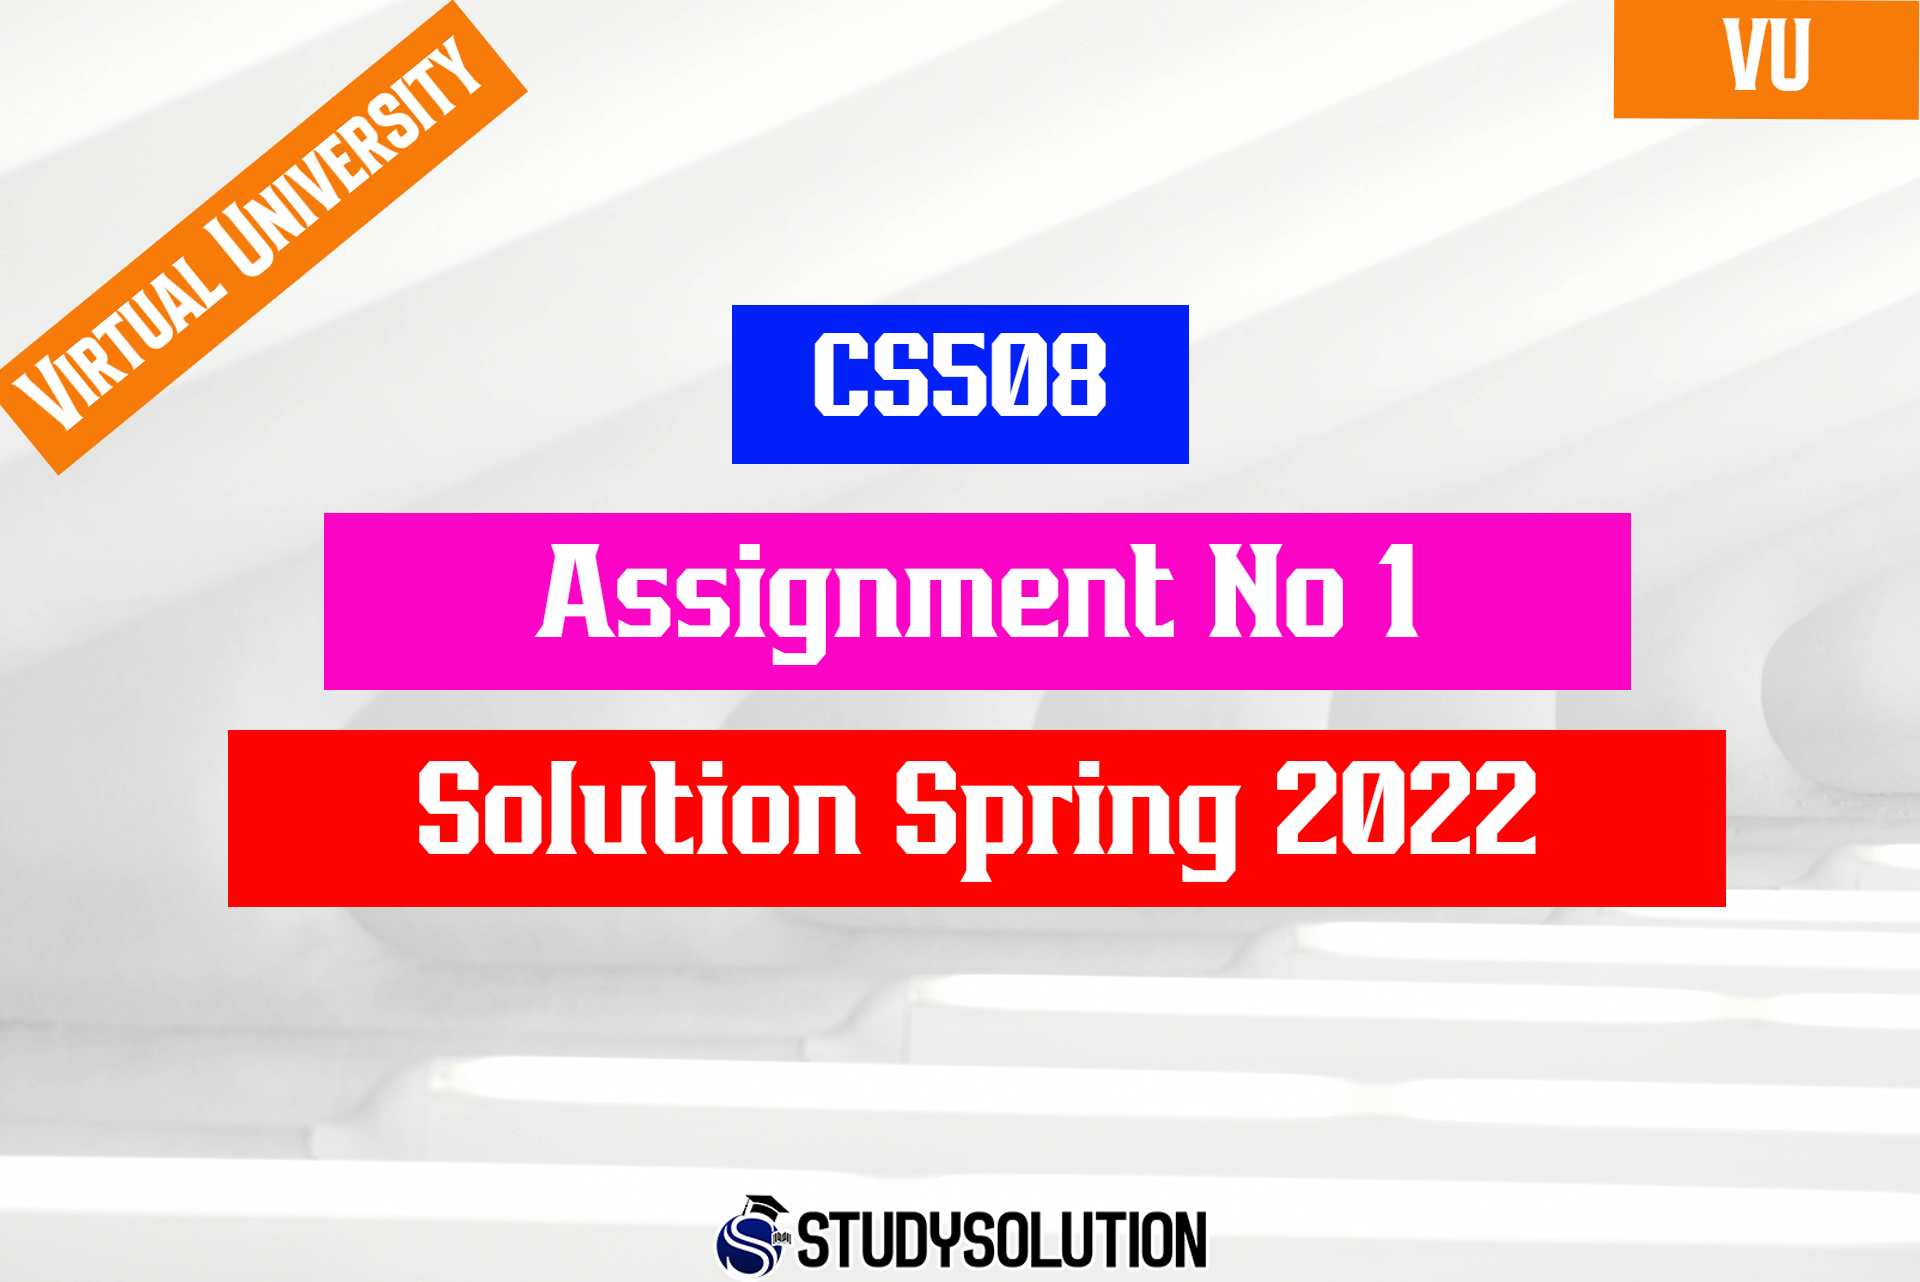 CS508 Assignment No 1 Solution Spring 2022